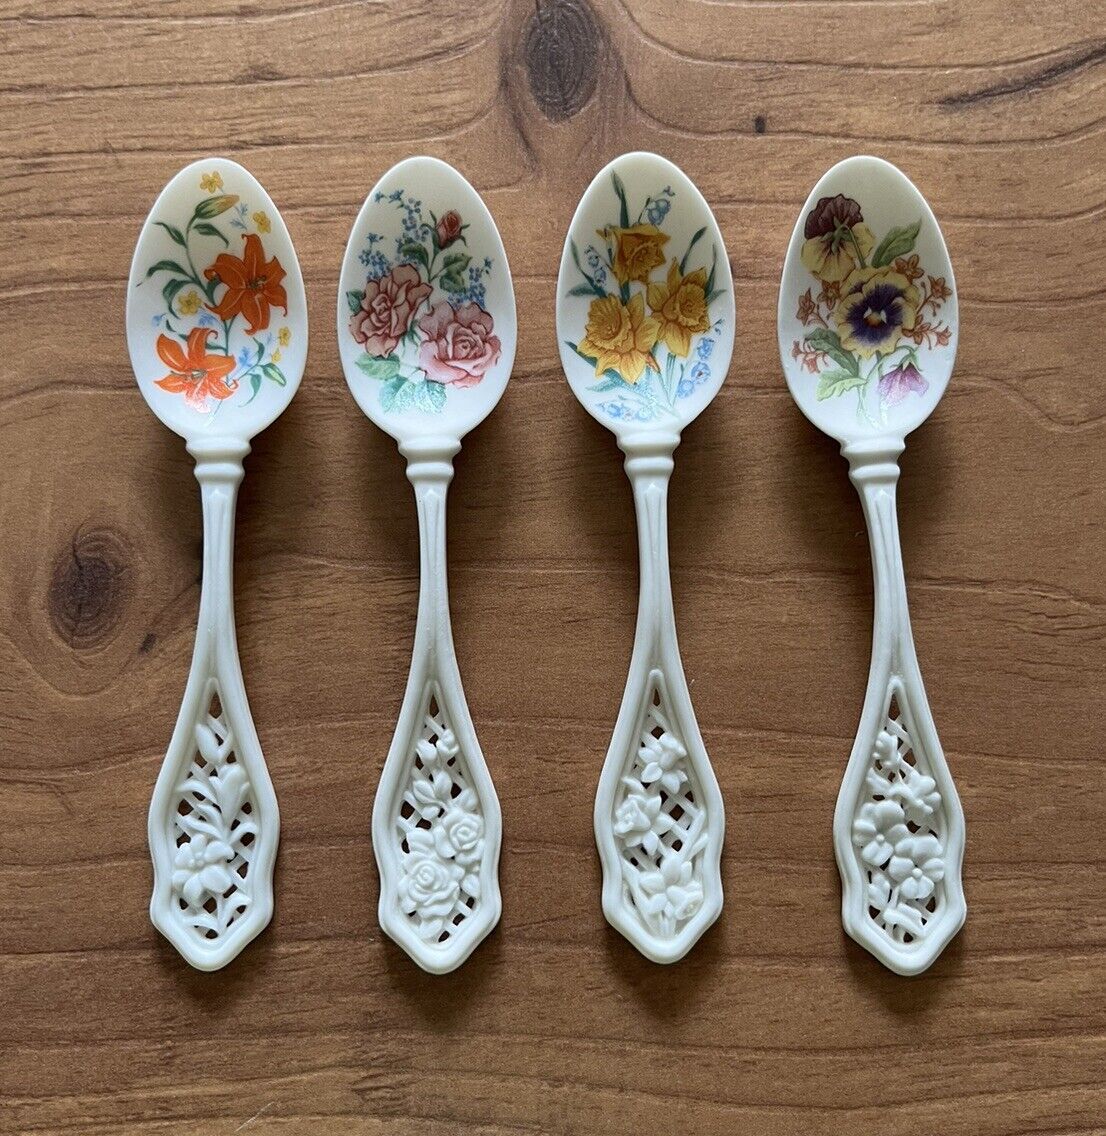 VTG AVON Collector Porcelain Spoon Set Floral Delicate Lacy Handles Grandmacore